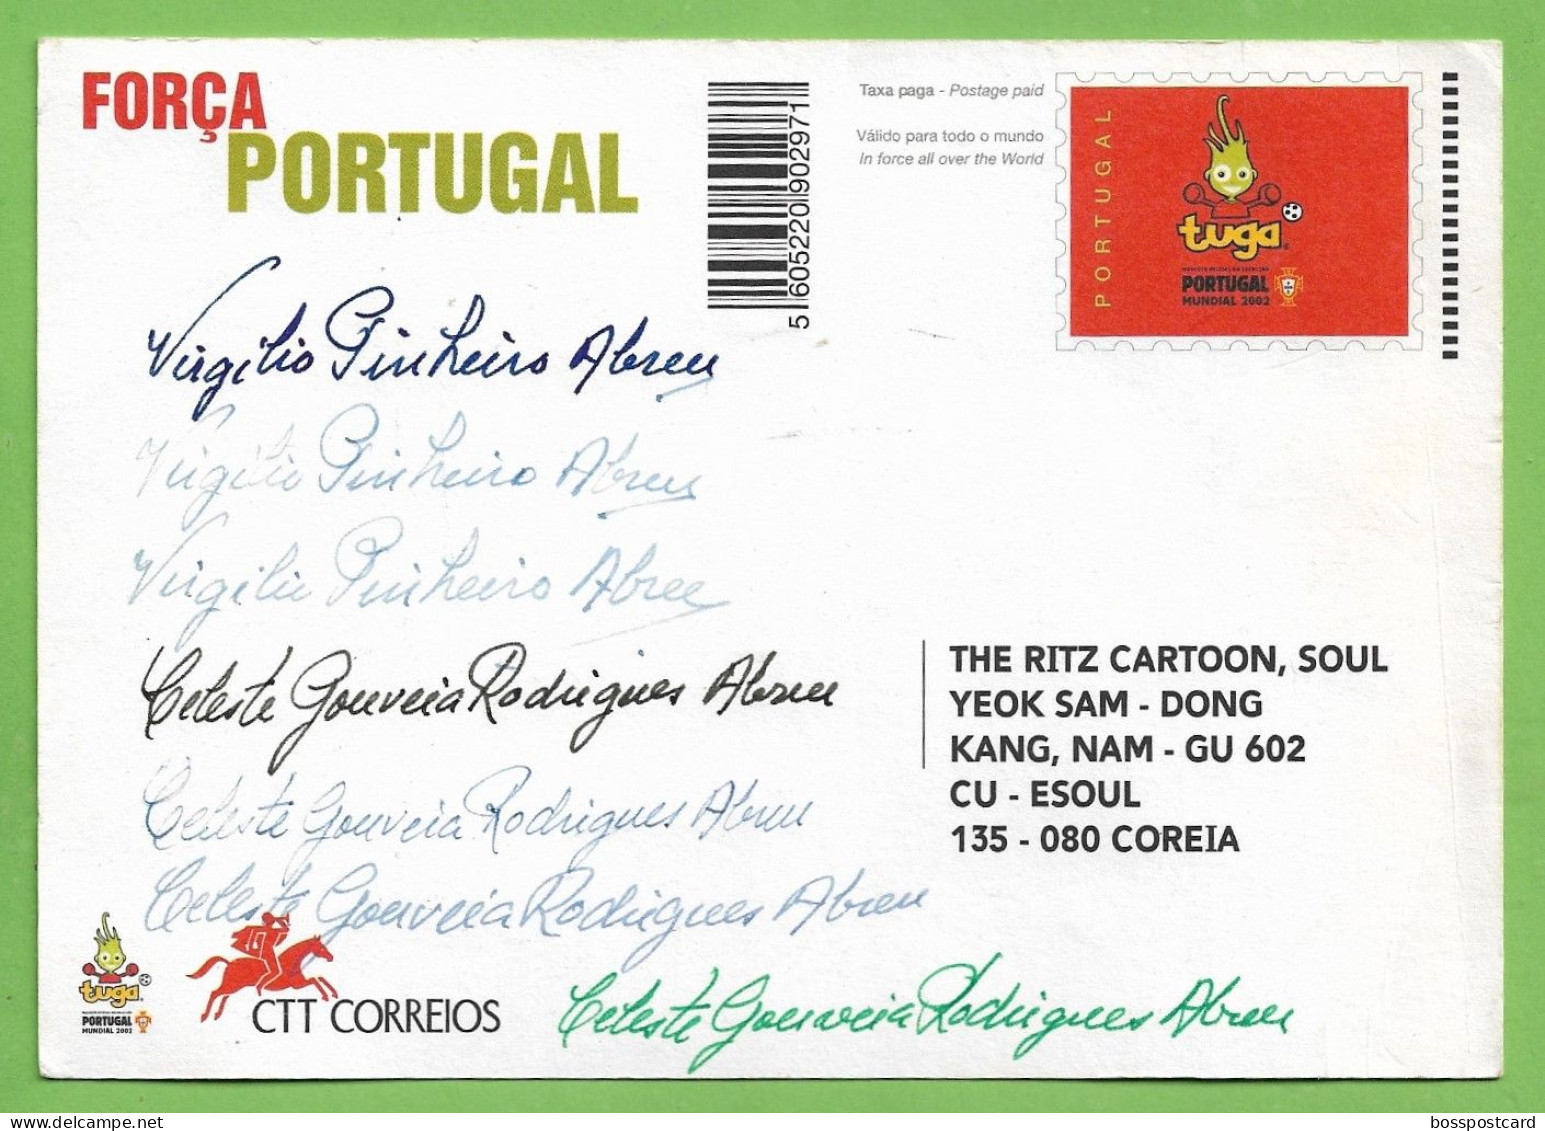 Lisboa - Selecção Nacional De Futebol No Mundial De 2002 - Estádio - Football - Stadium - Portugal - Calcio